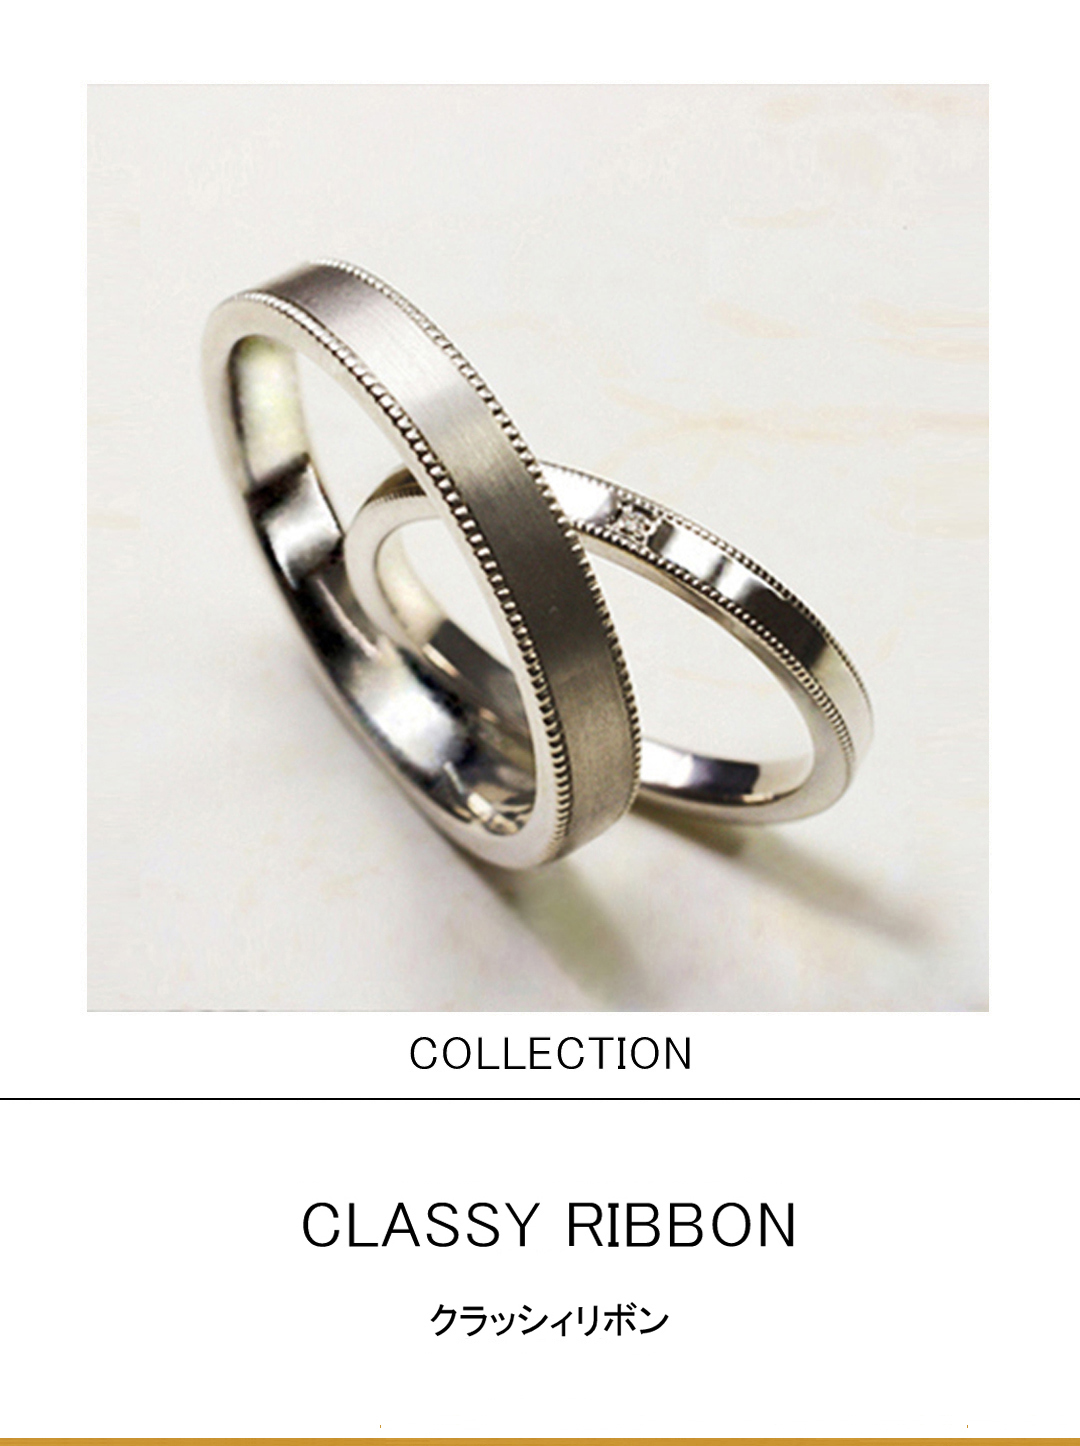 白いプラチナのリボンデザインをエレガントにデザインした結婚指輪のサムネイル